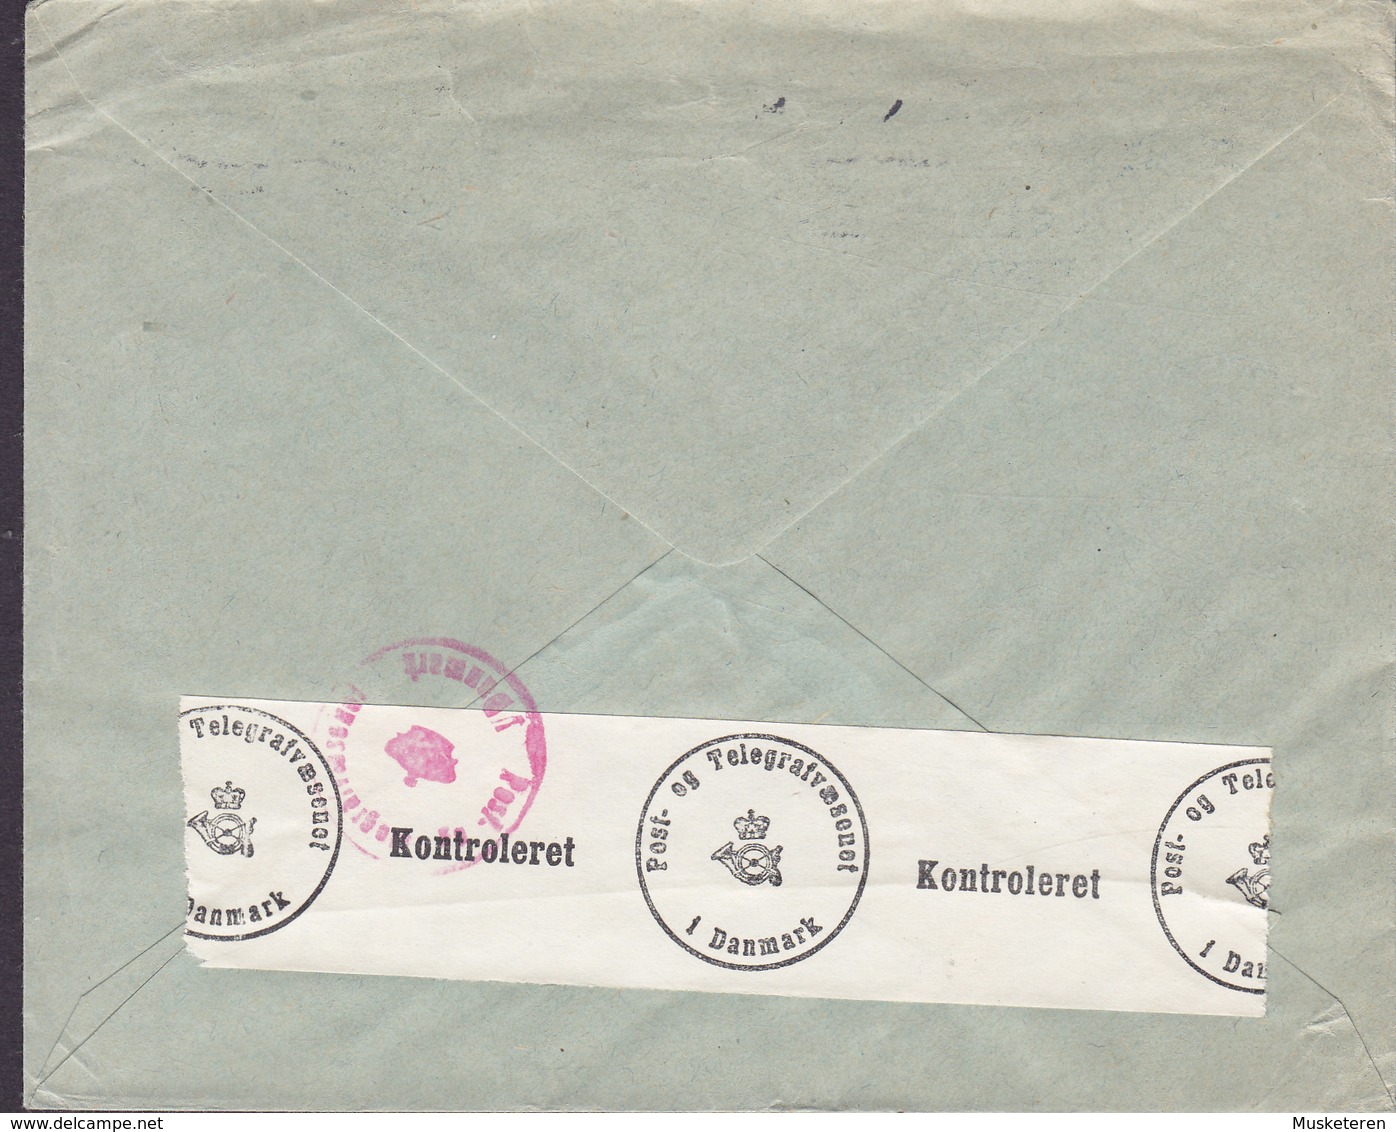 Denmark DAFAMETA, KØBENHAVN 1941 Cover Brief P & T KONTROLERET Censor Zensur Label Stamps ERROR Variety Misplaced Print - Errors, Freaks & Oddities (EFO)